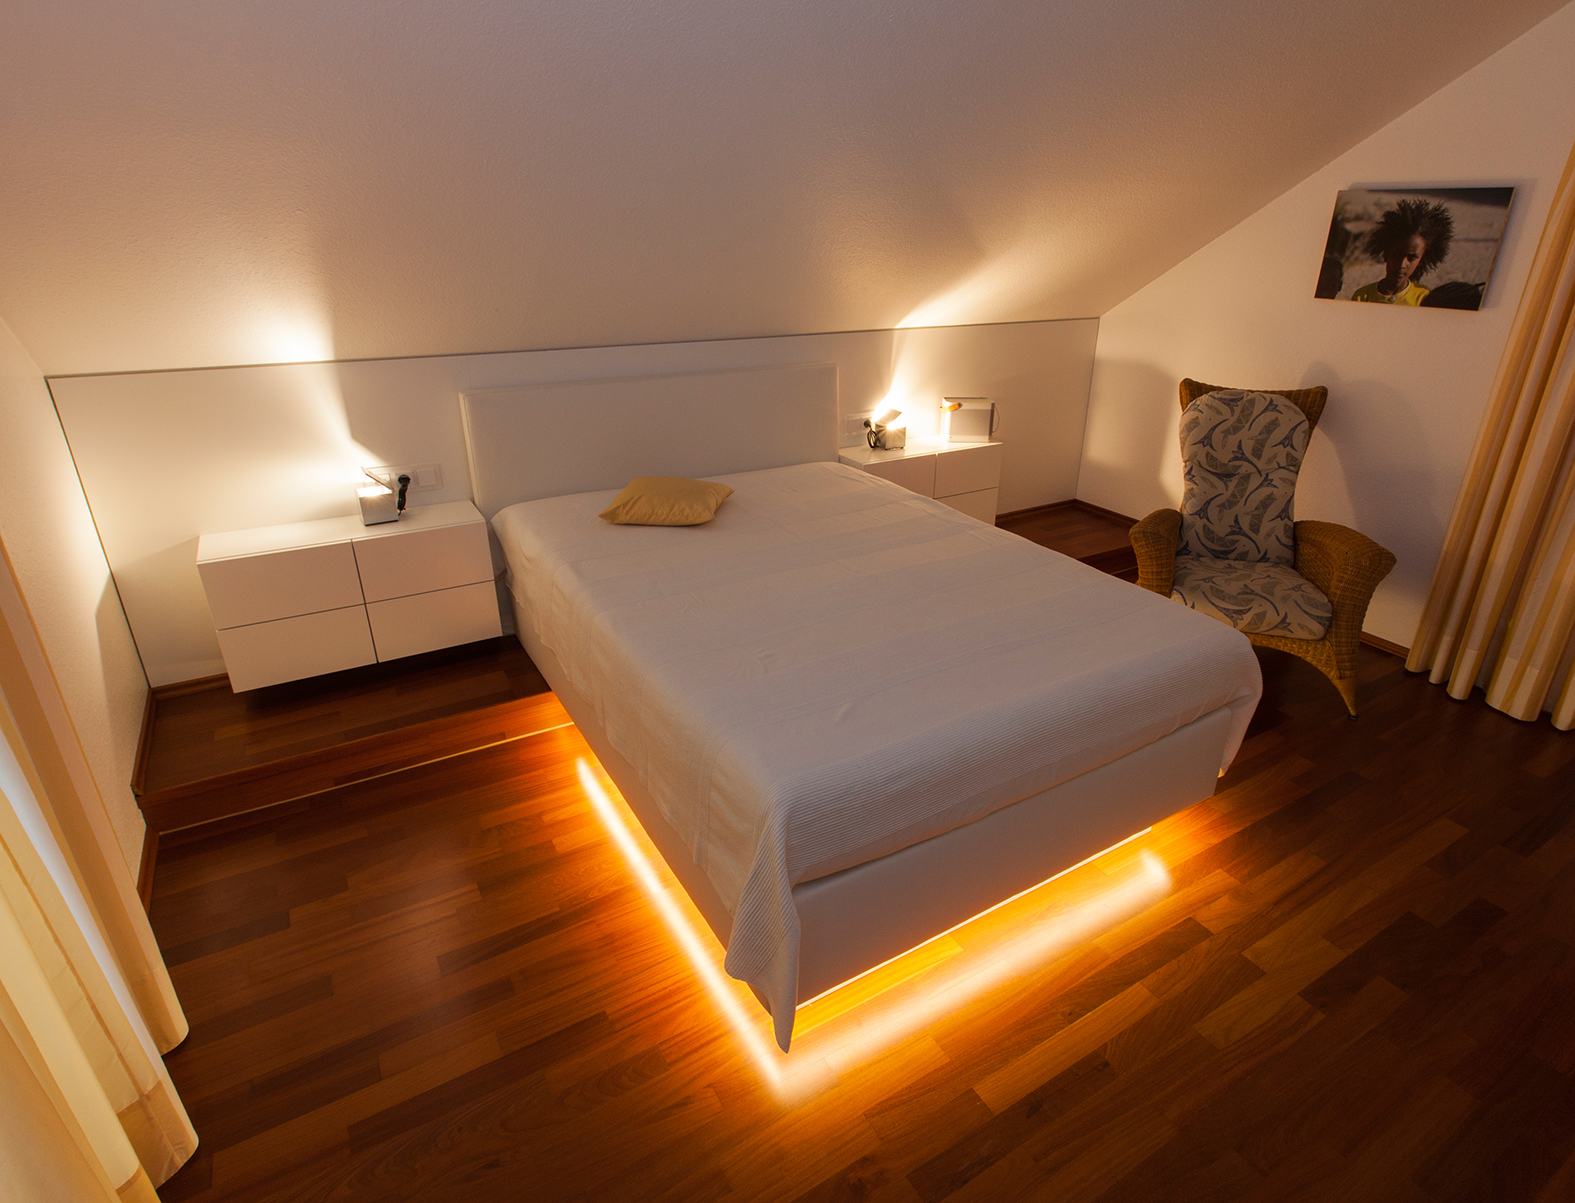 Wohnraum, Doppelbett mit Akzentbeleuchtung in Gelb, Nachtschränken und Stuhl.